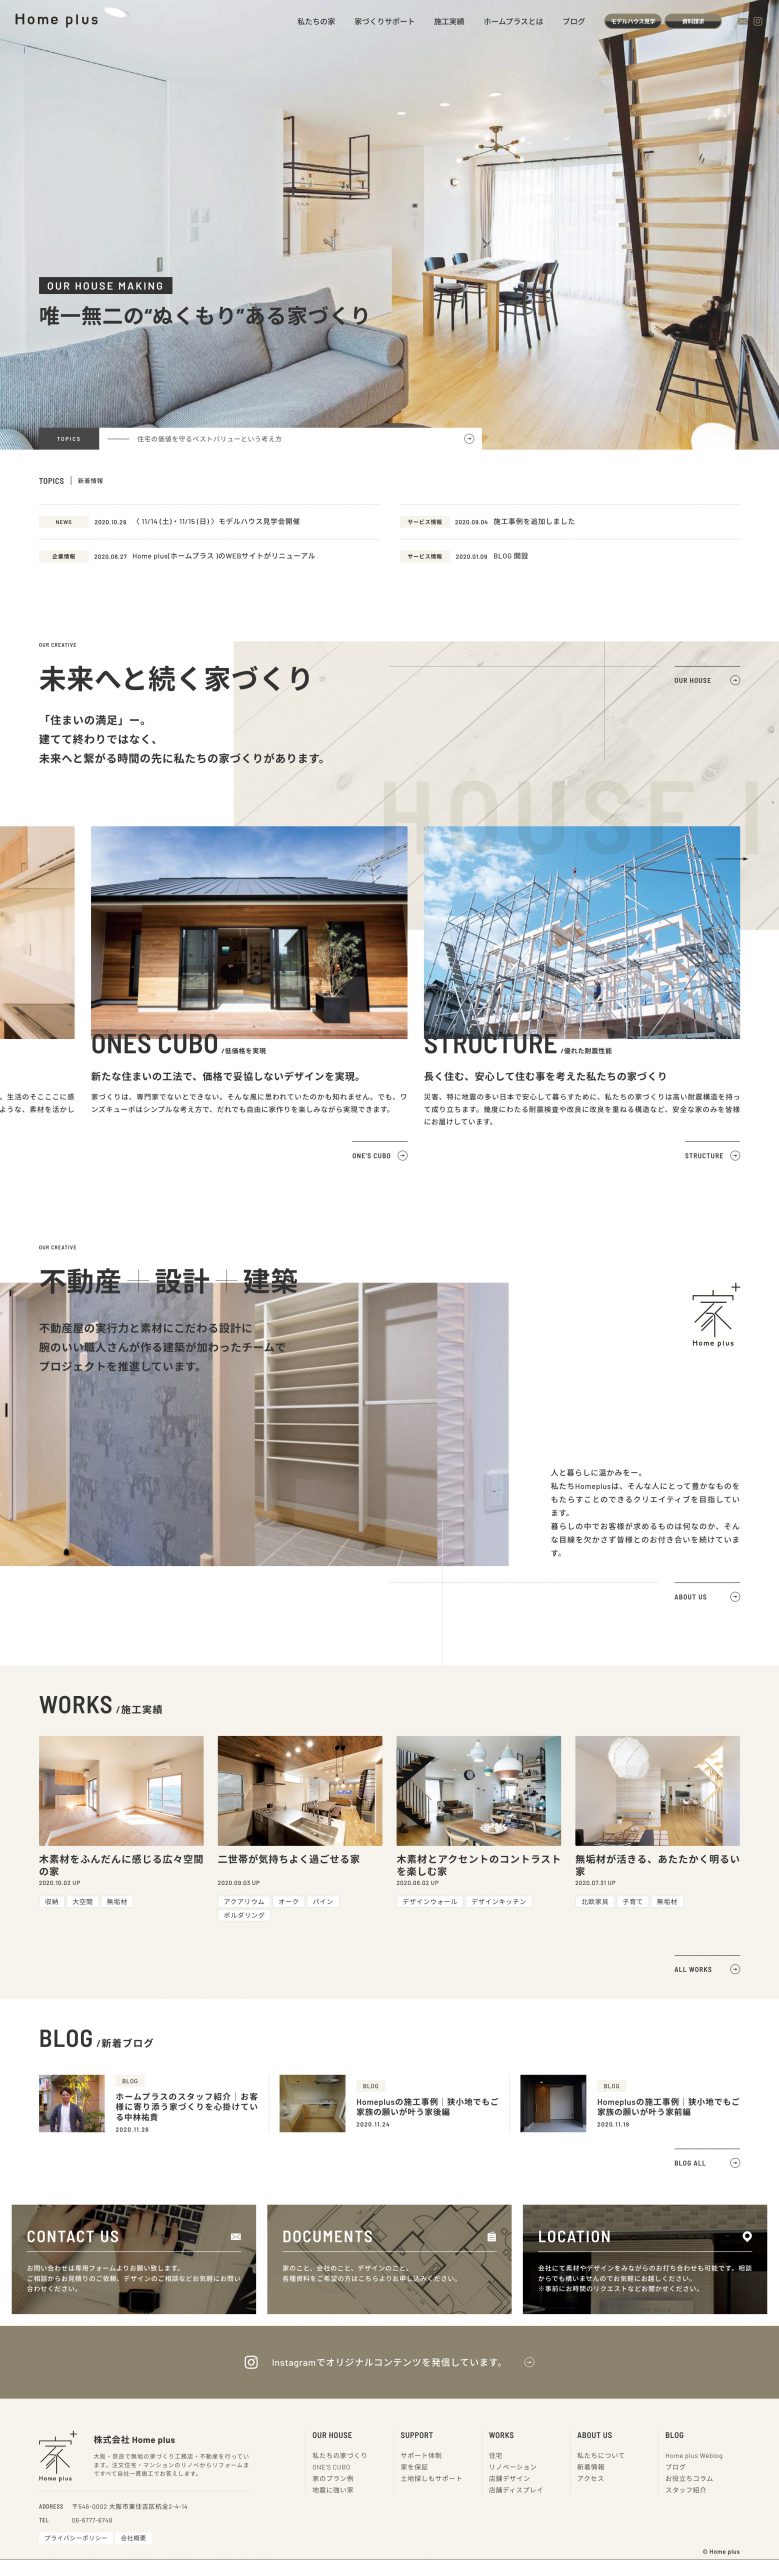 建築･不動産・建設・開発 コーポレートサイト制作 WEBデザイン参考ギャラリー 株式会社Home plus(ホームプラス)